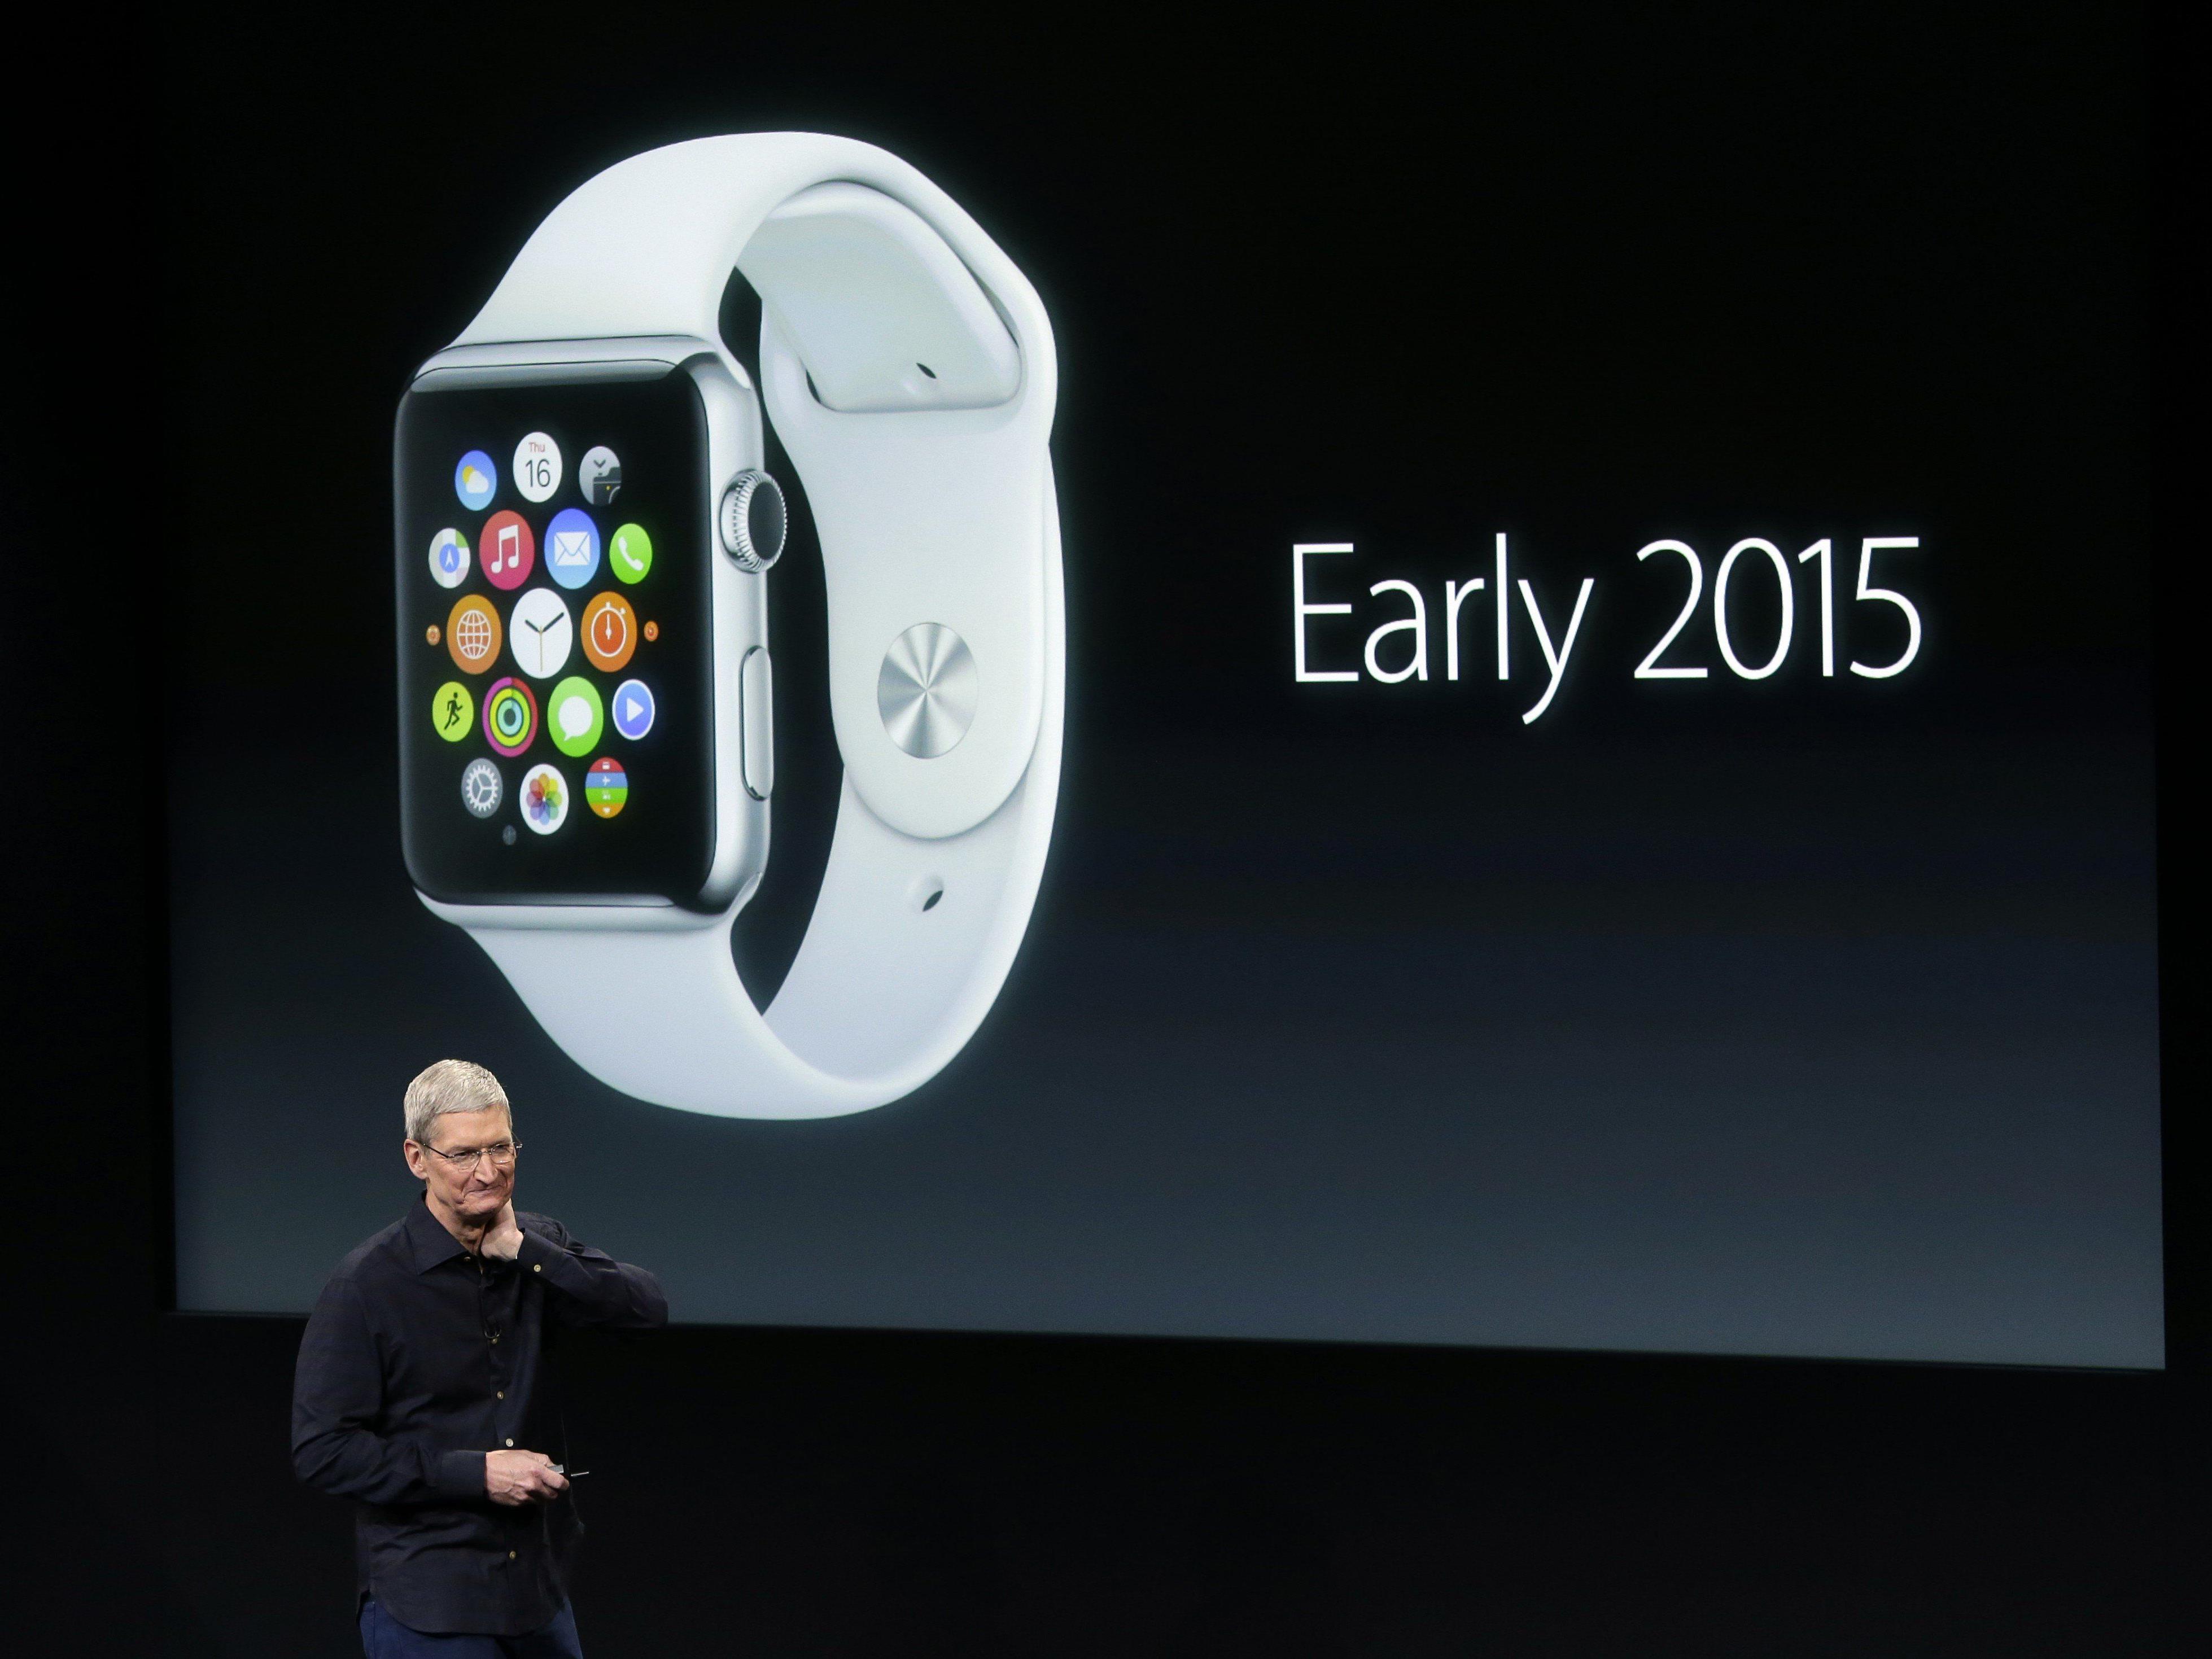 Gelingt Apple mit der Smartwatch ein neuer großer Boom?